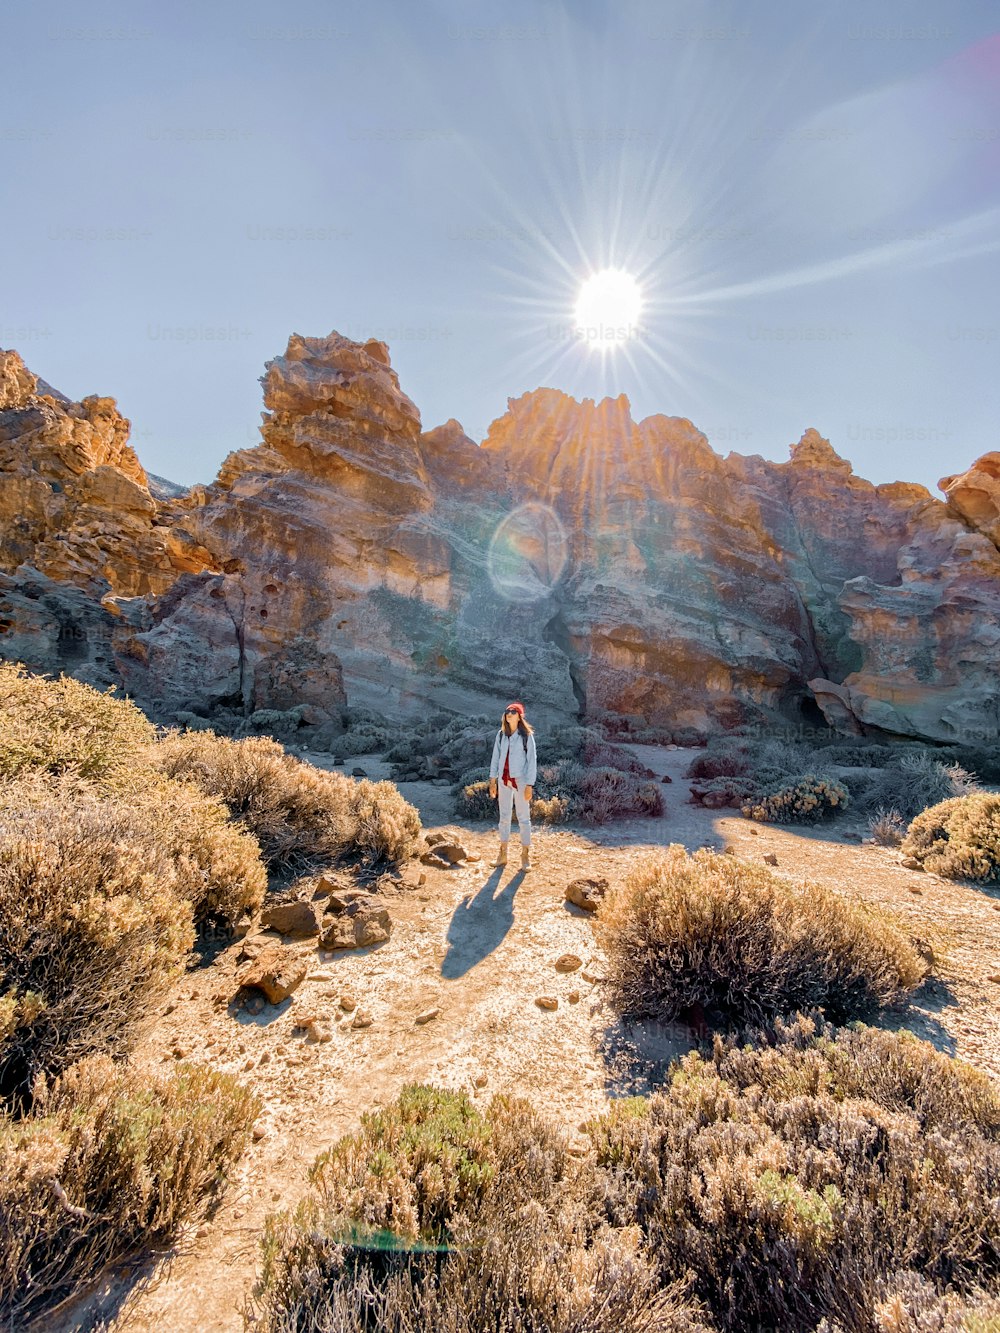 Landschaft eines schönen Felsens im Wüstental mit reisender Frau. Bild auf dem Handy gemacht